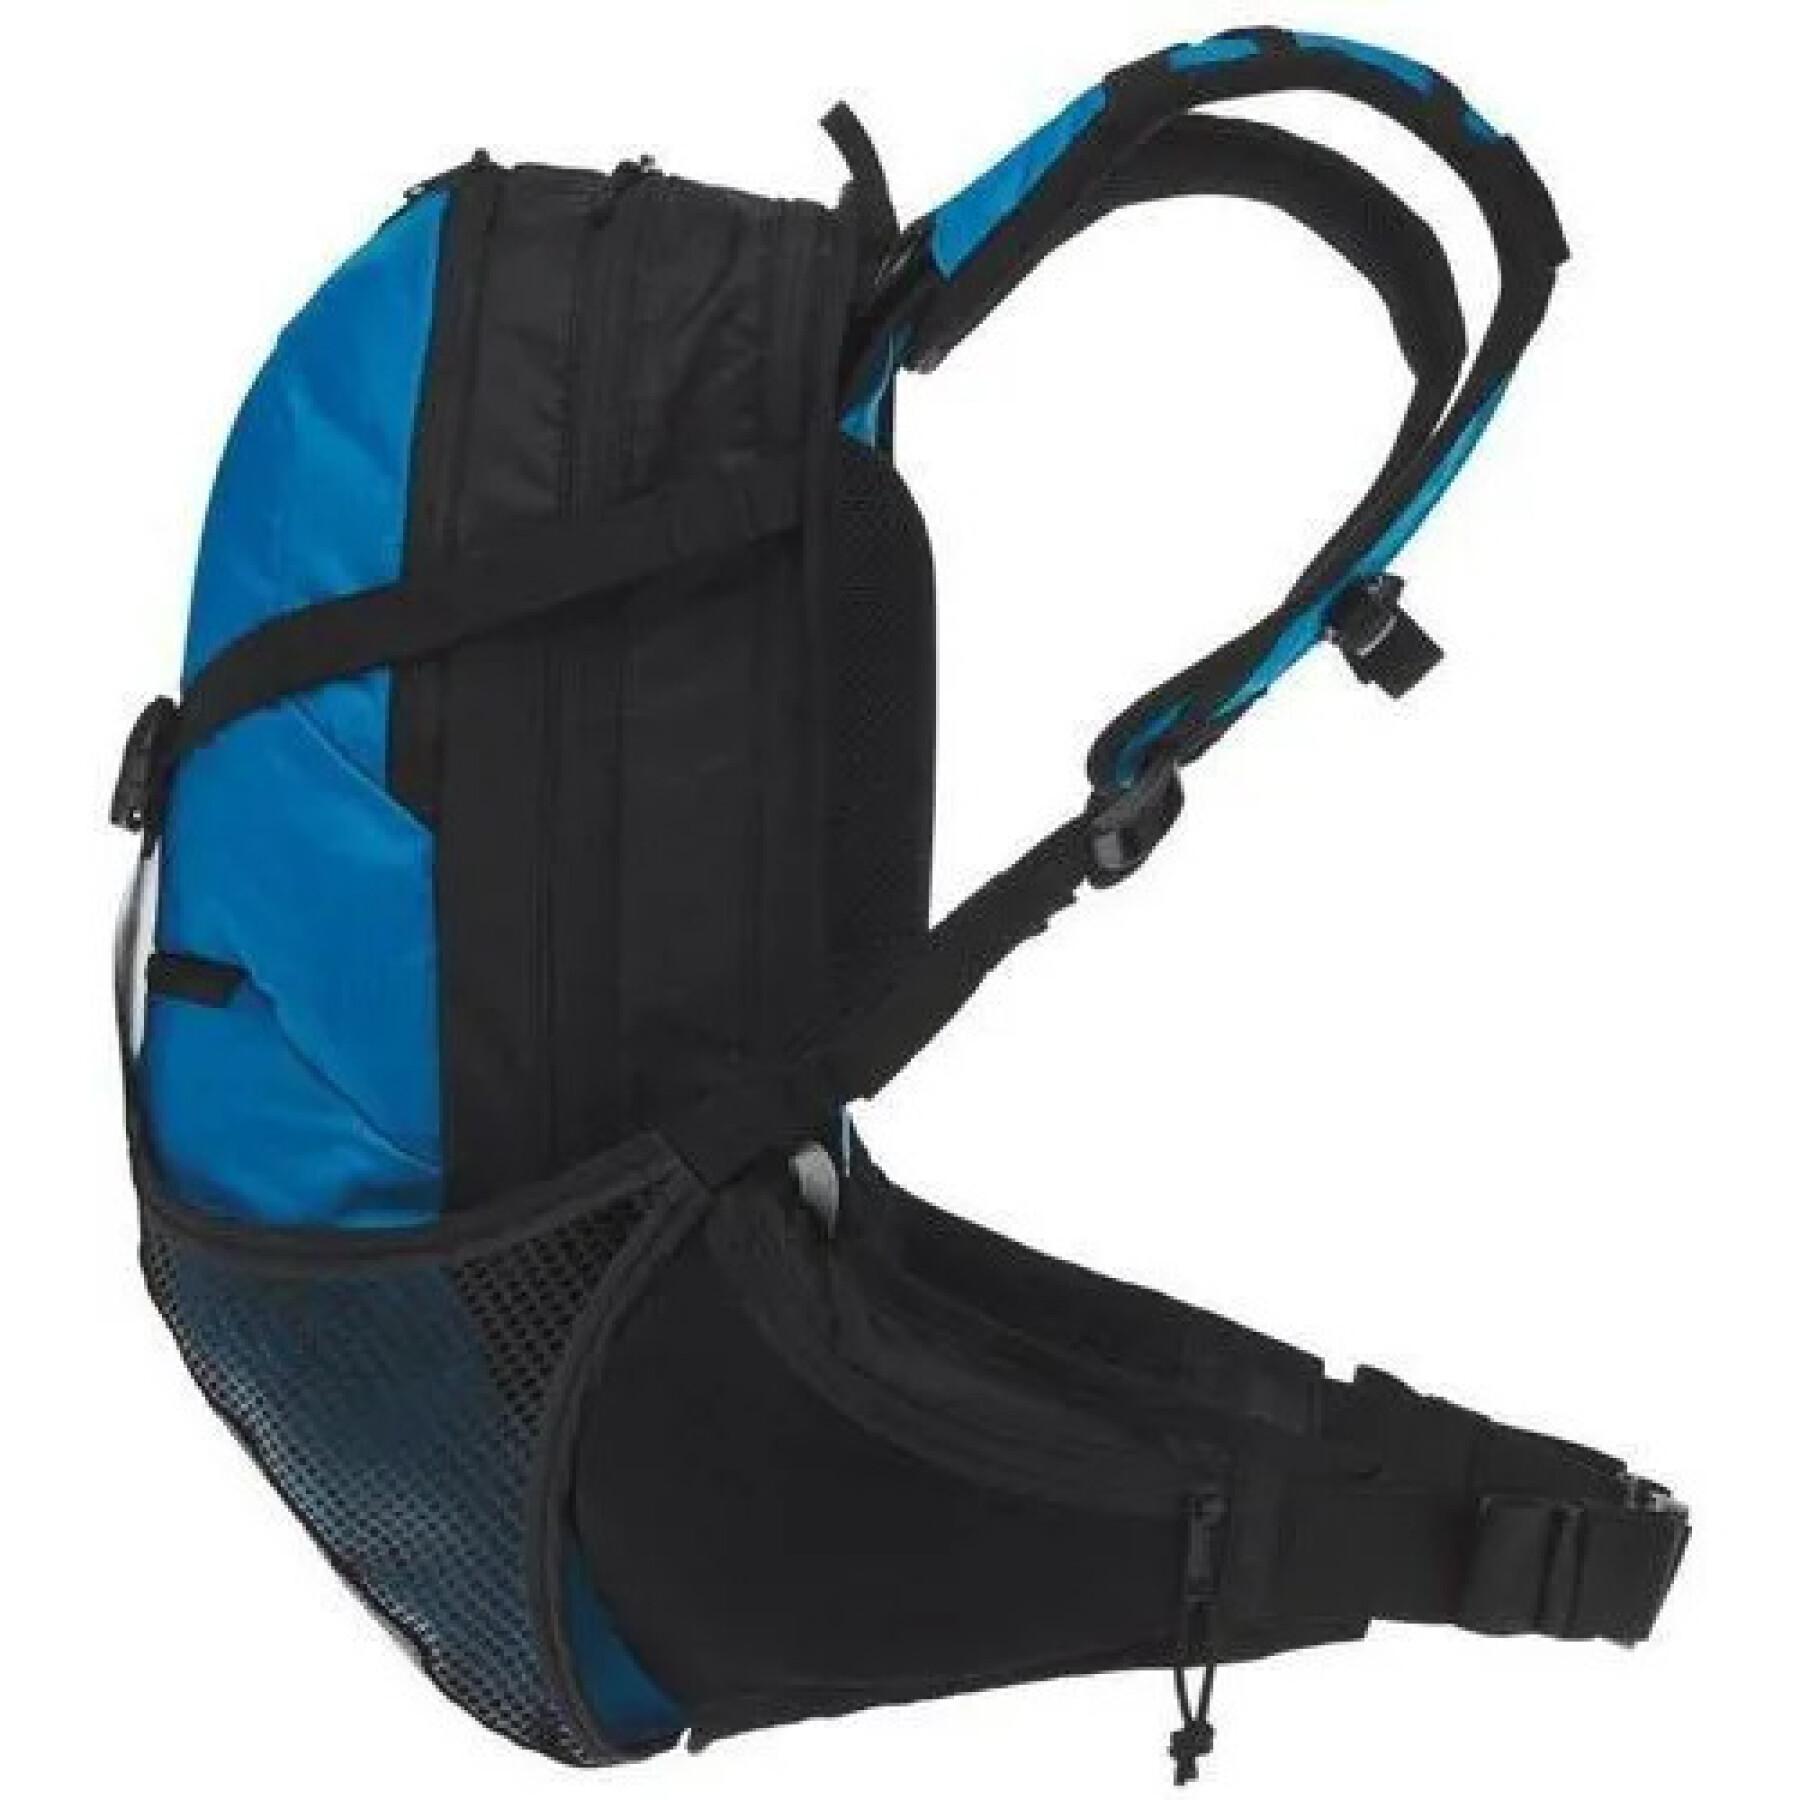 Backpack Ergon bx3 evo